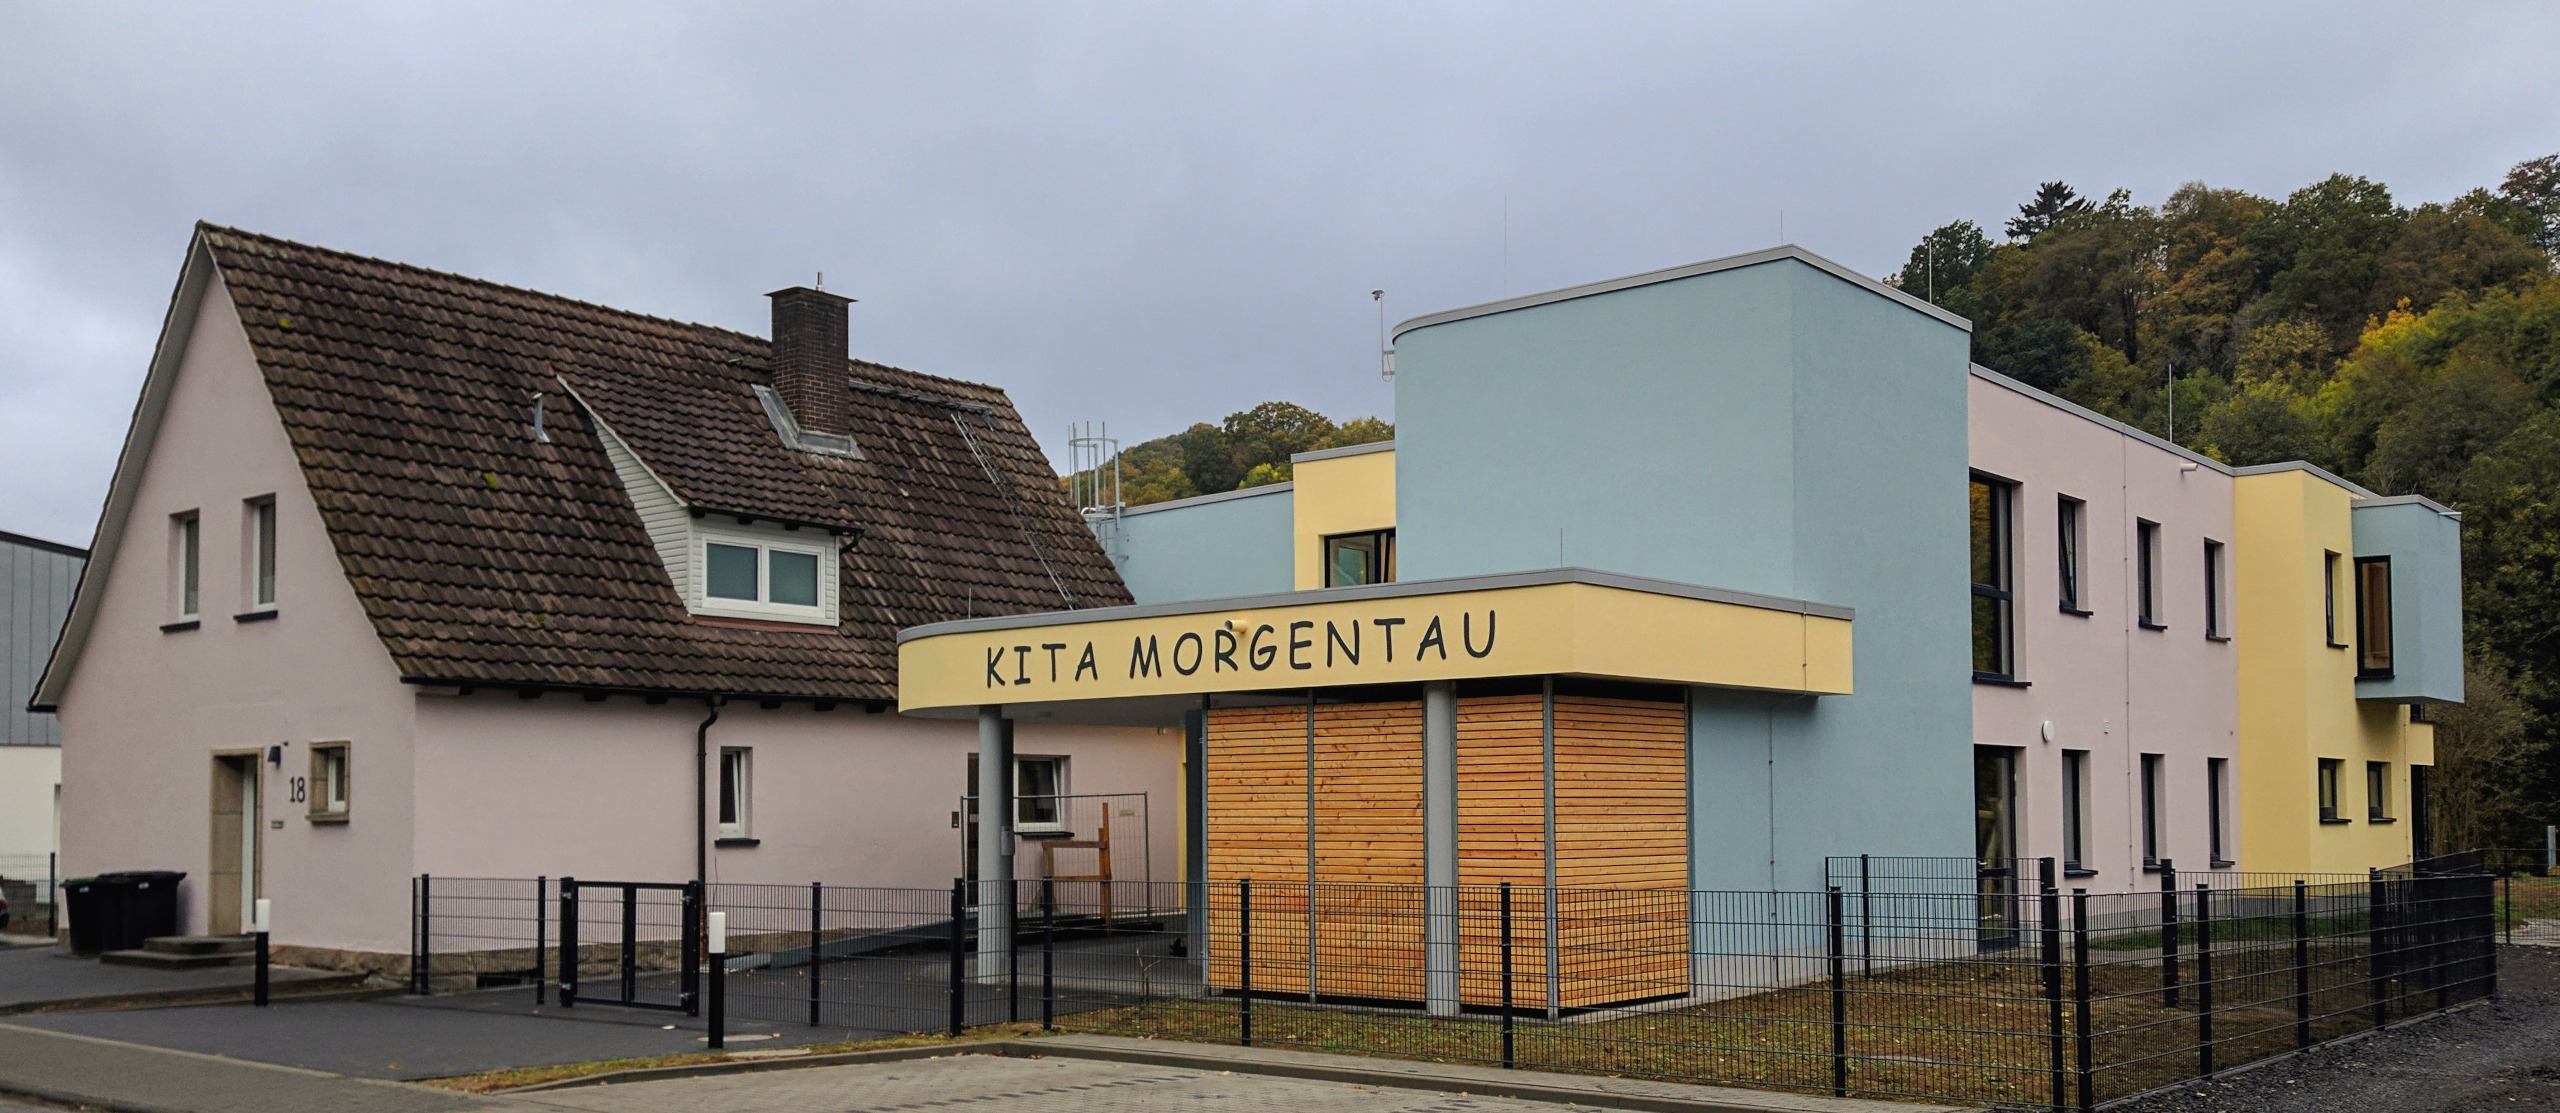 Kita Morgentau | Witzenhausen